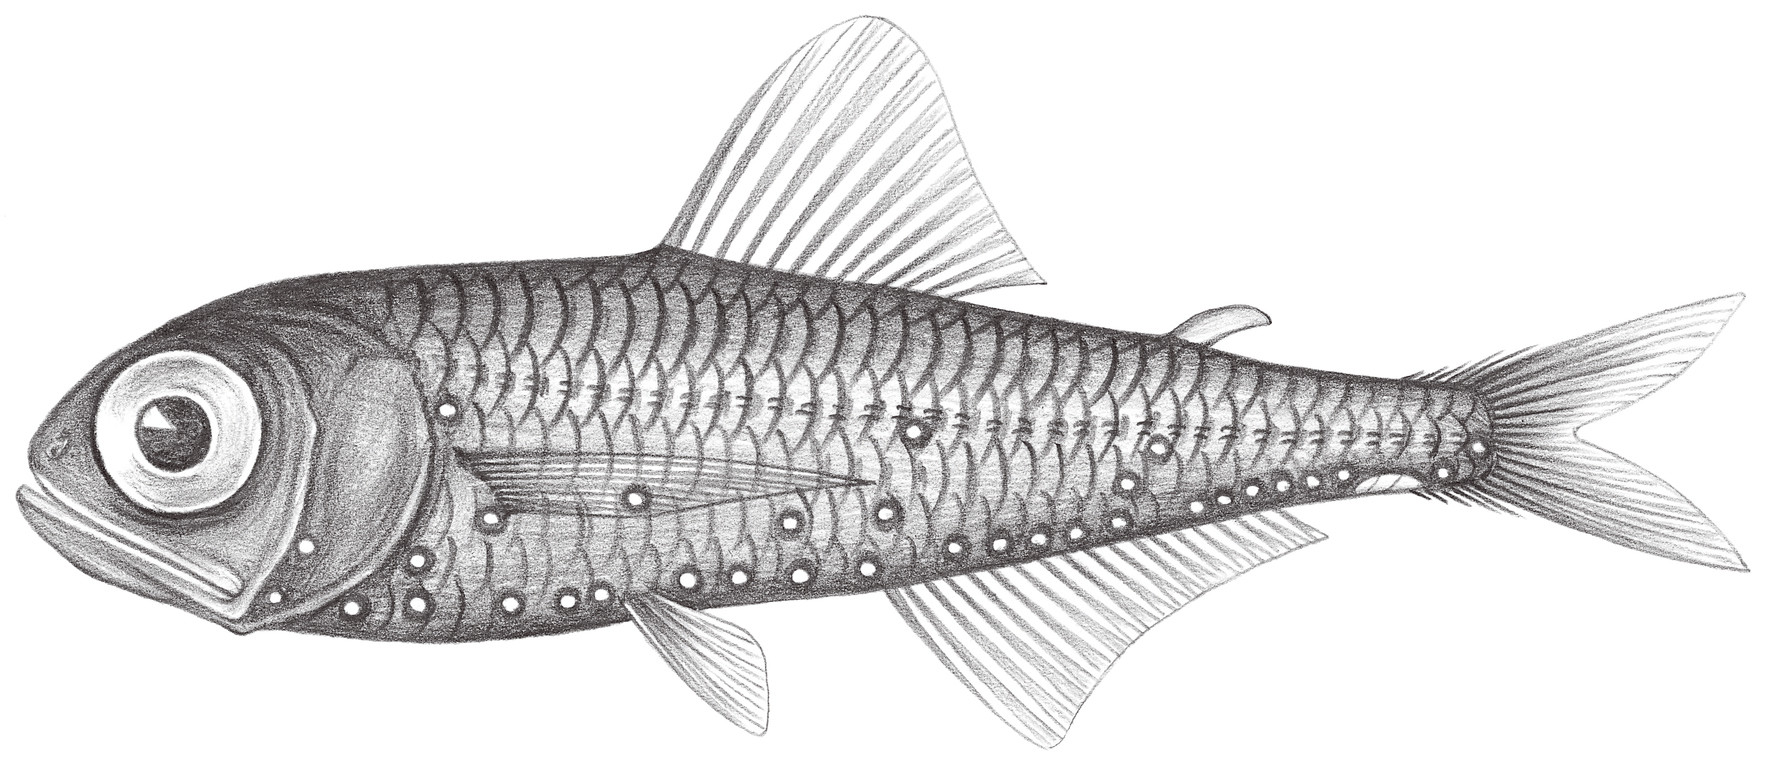 518.	近壯燈魚 Hygophum proximum Becker, 1936